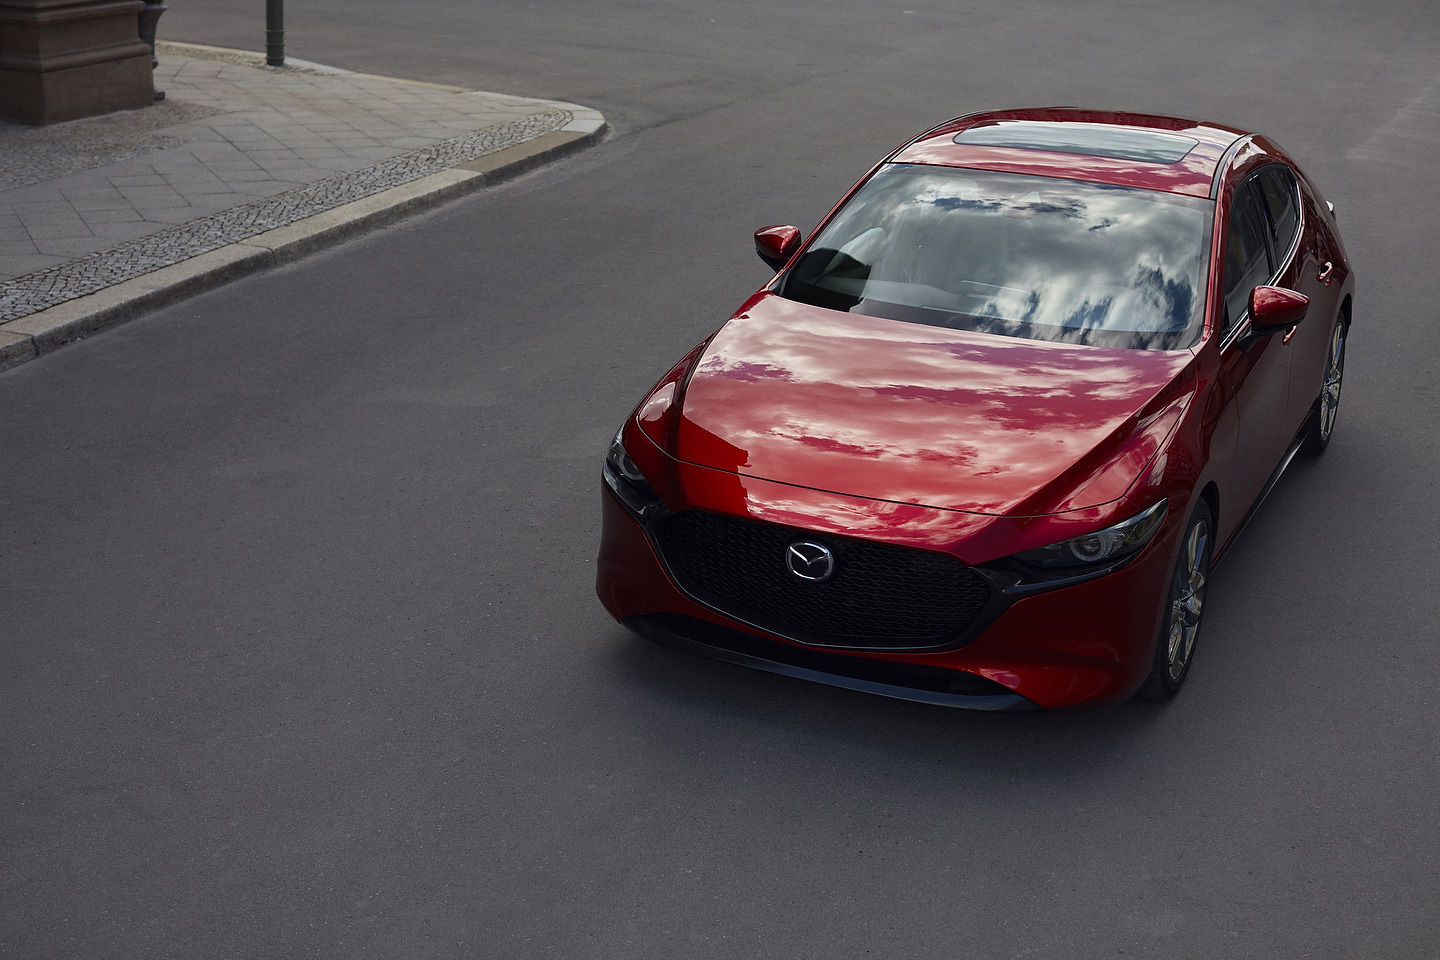 2019 Mazda3 starts at $18,000